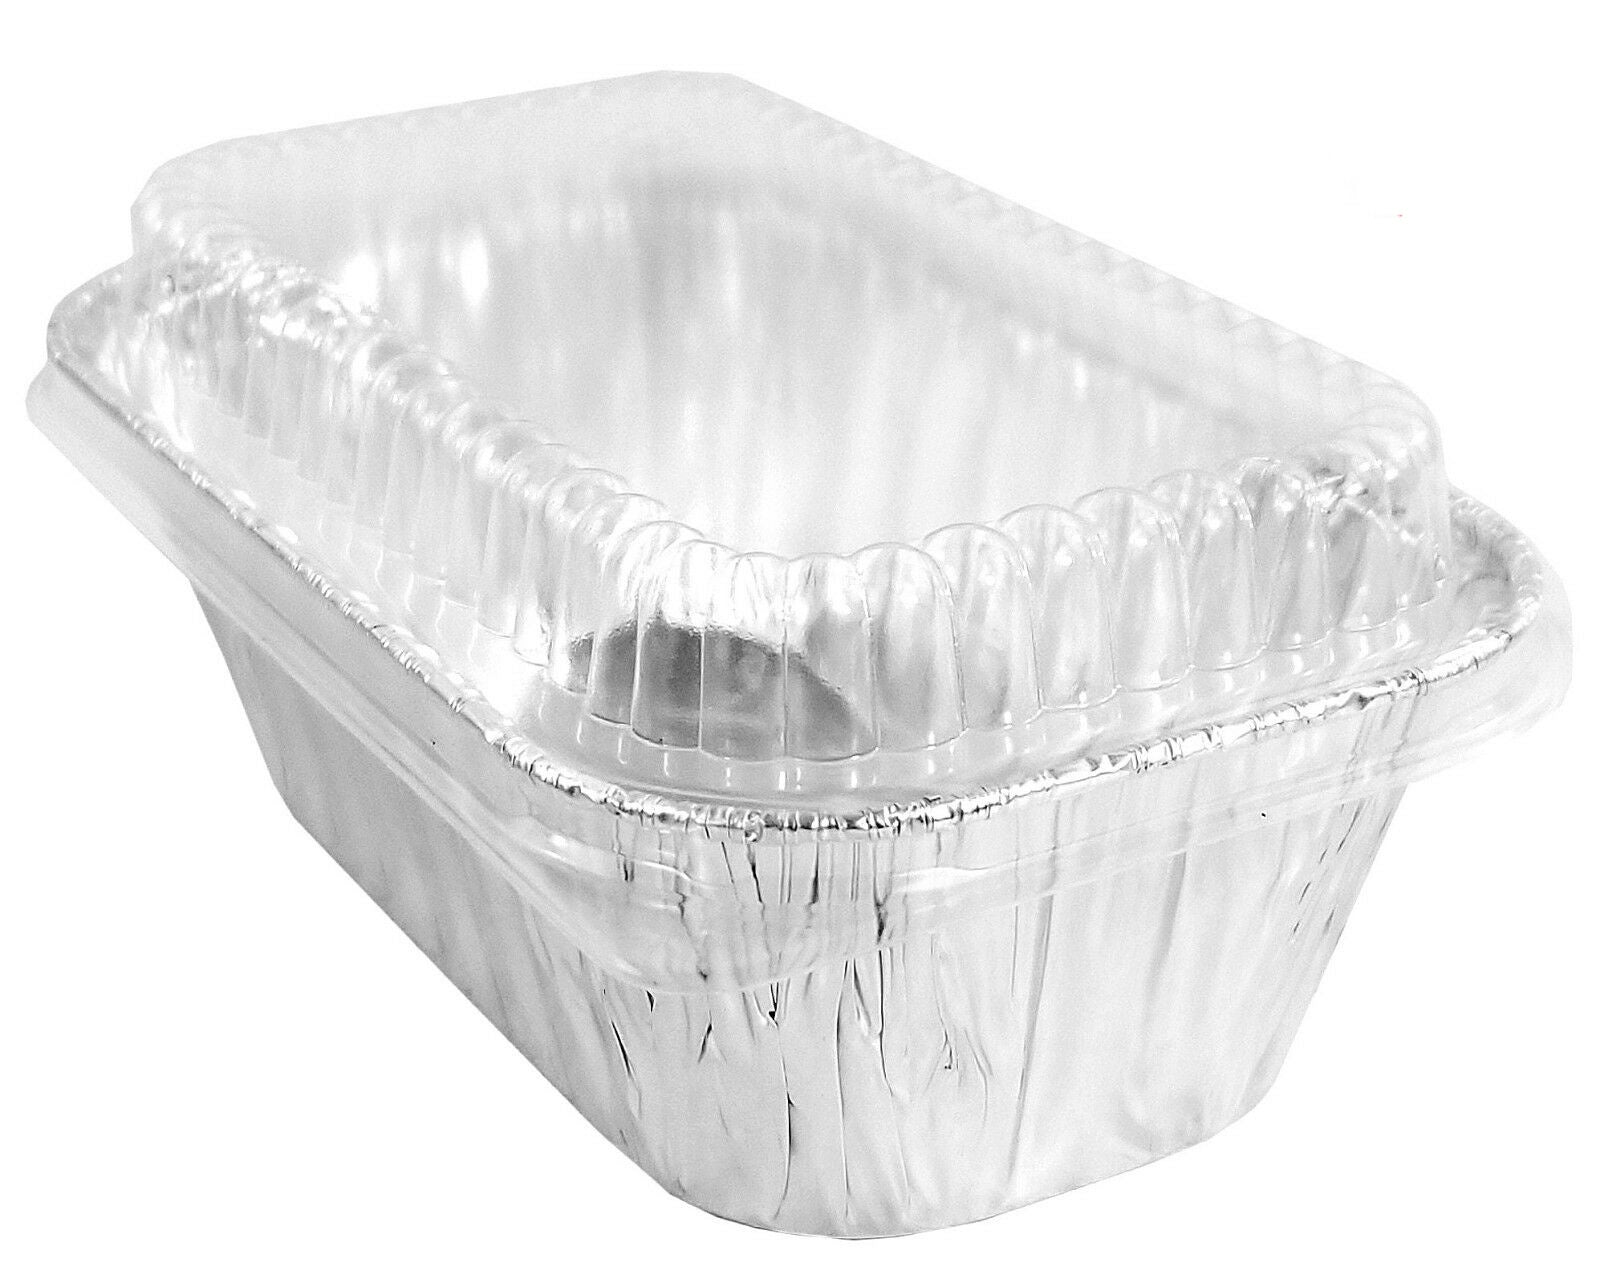 Handi-Foil 4 oz. Aluminum Foil Utility Cup w/Clear Plastic Lid –